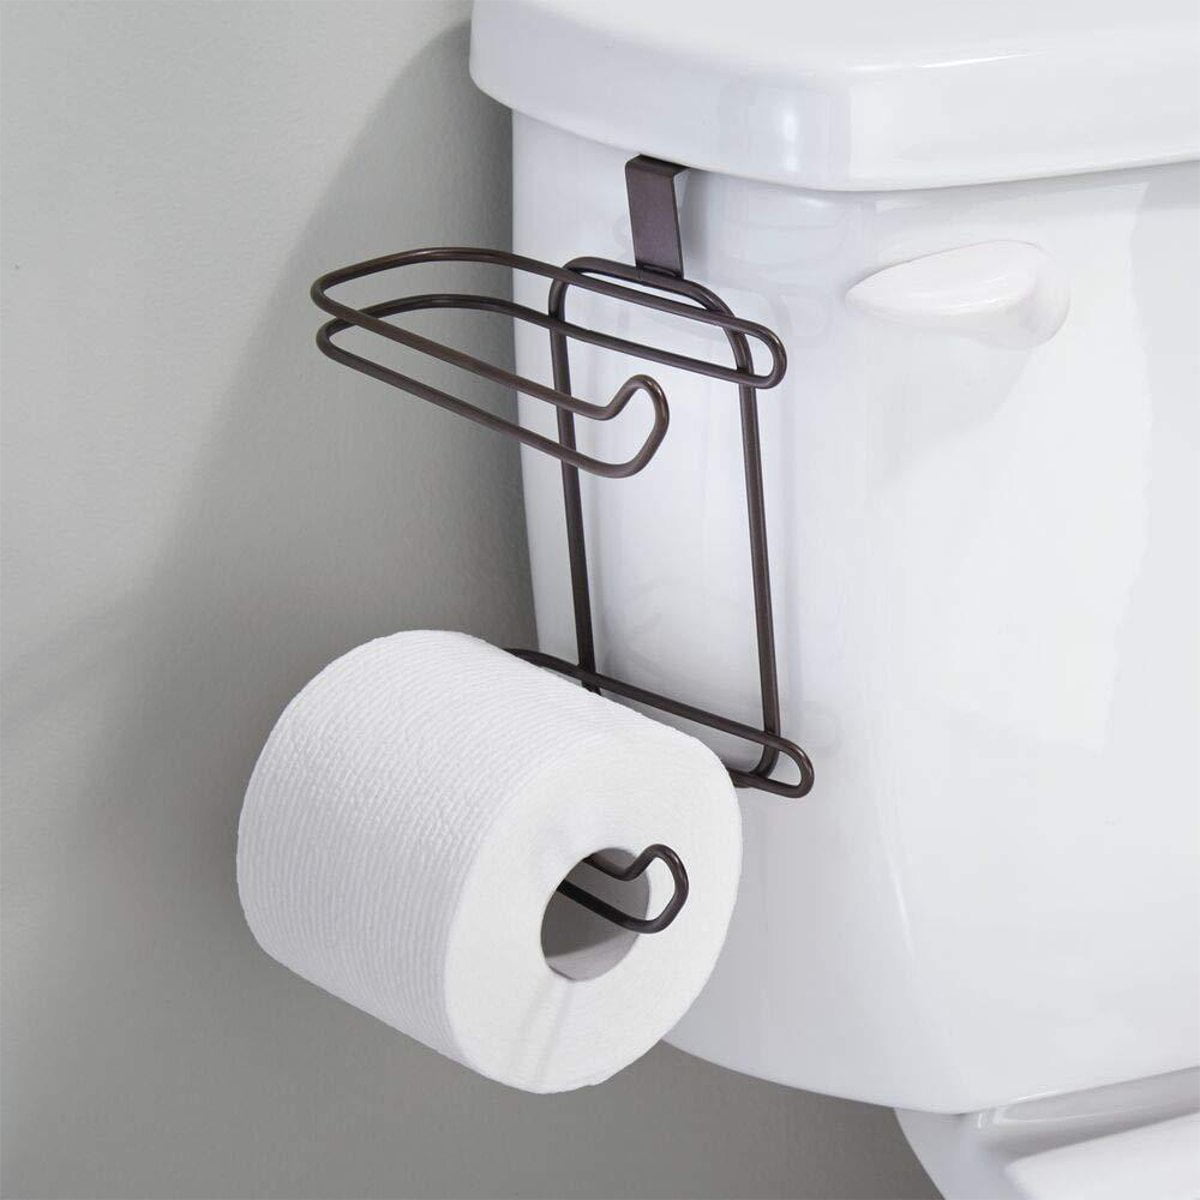 Sonic toilate paper holder Toilet Paper Holder Toiler Paper Storage Toilet Paper Stand Kids Bathroom Decor